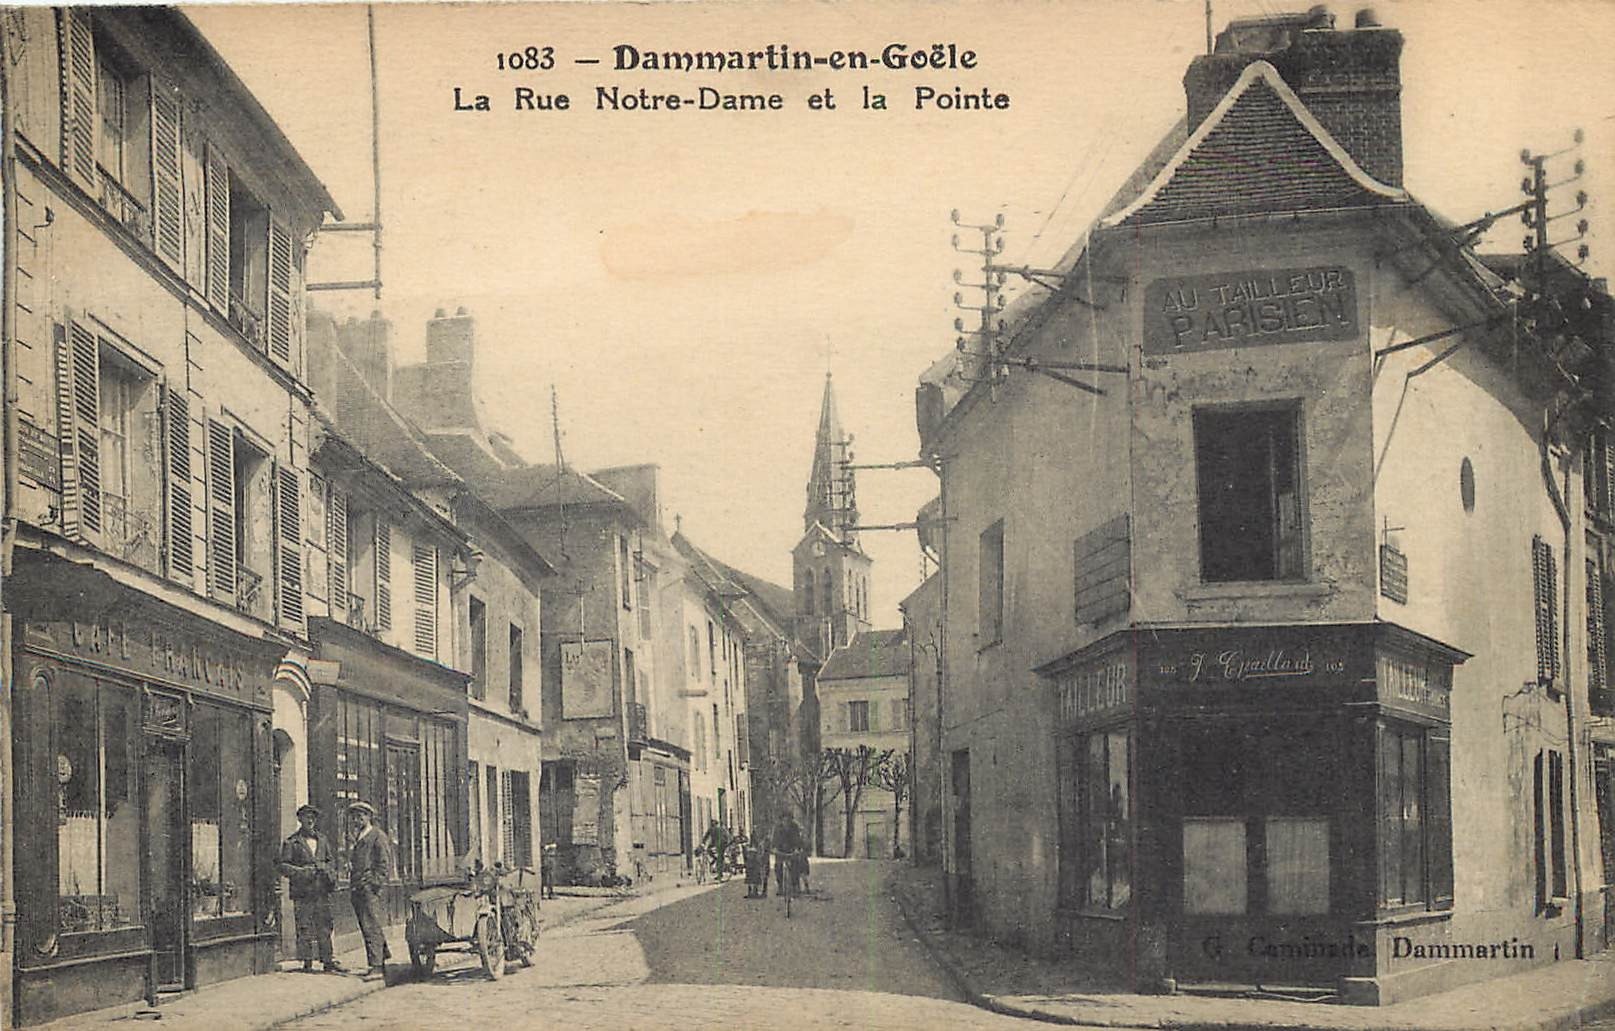 77 DAMMARTIN-EN-GOËLE. La Pointe rue Notre-Dame 1935 Tailleur et Café Français